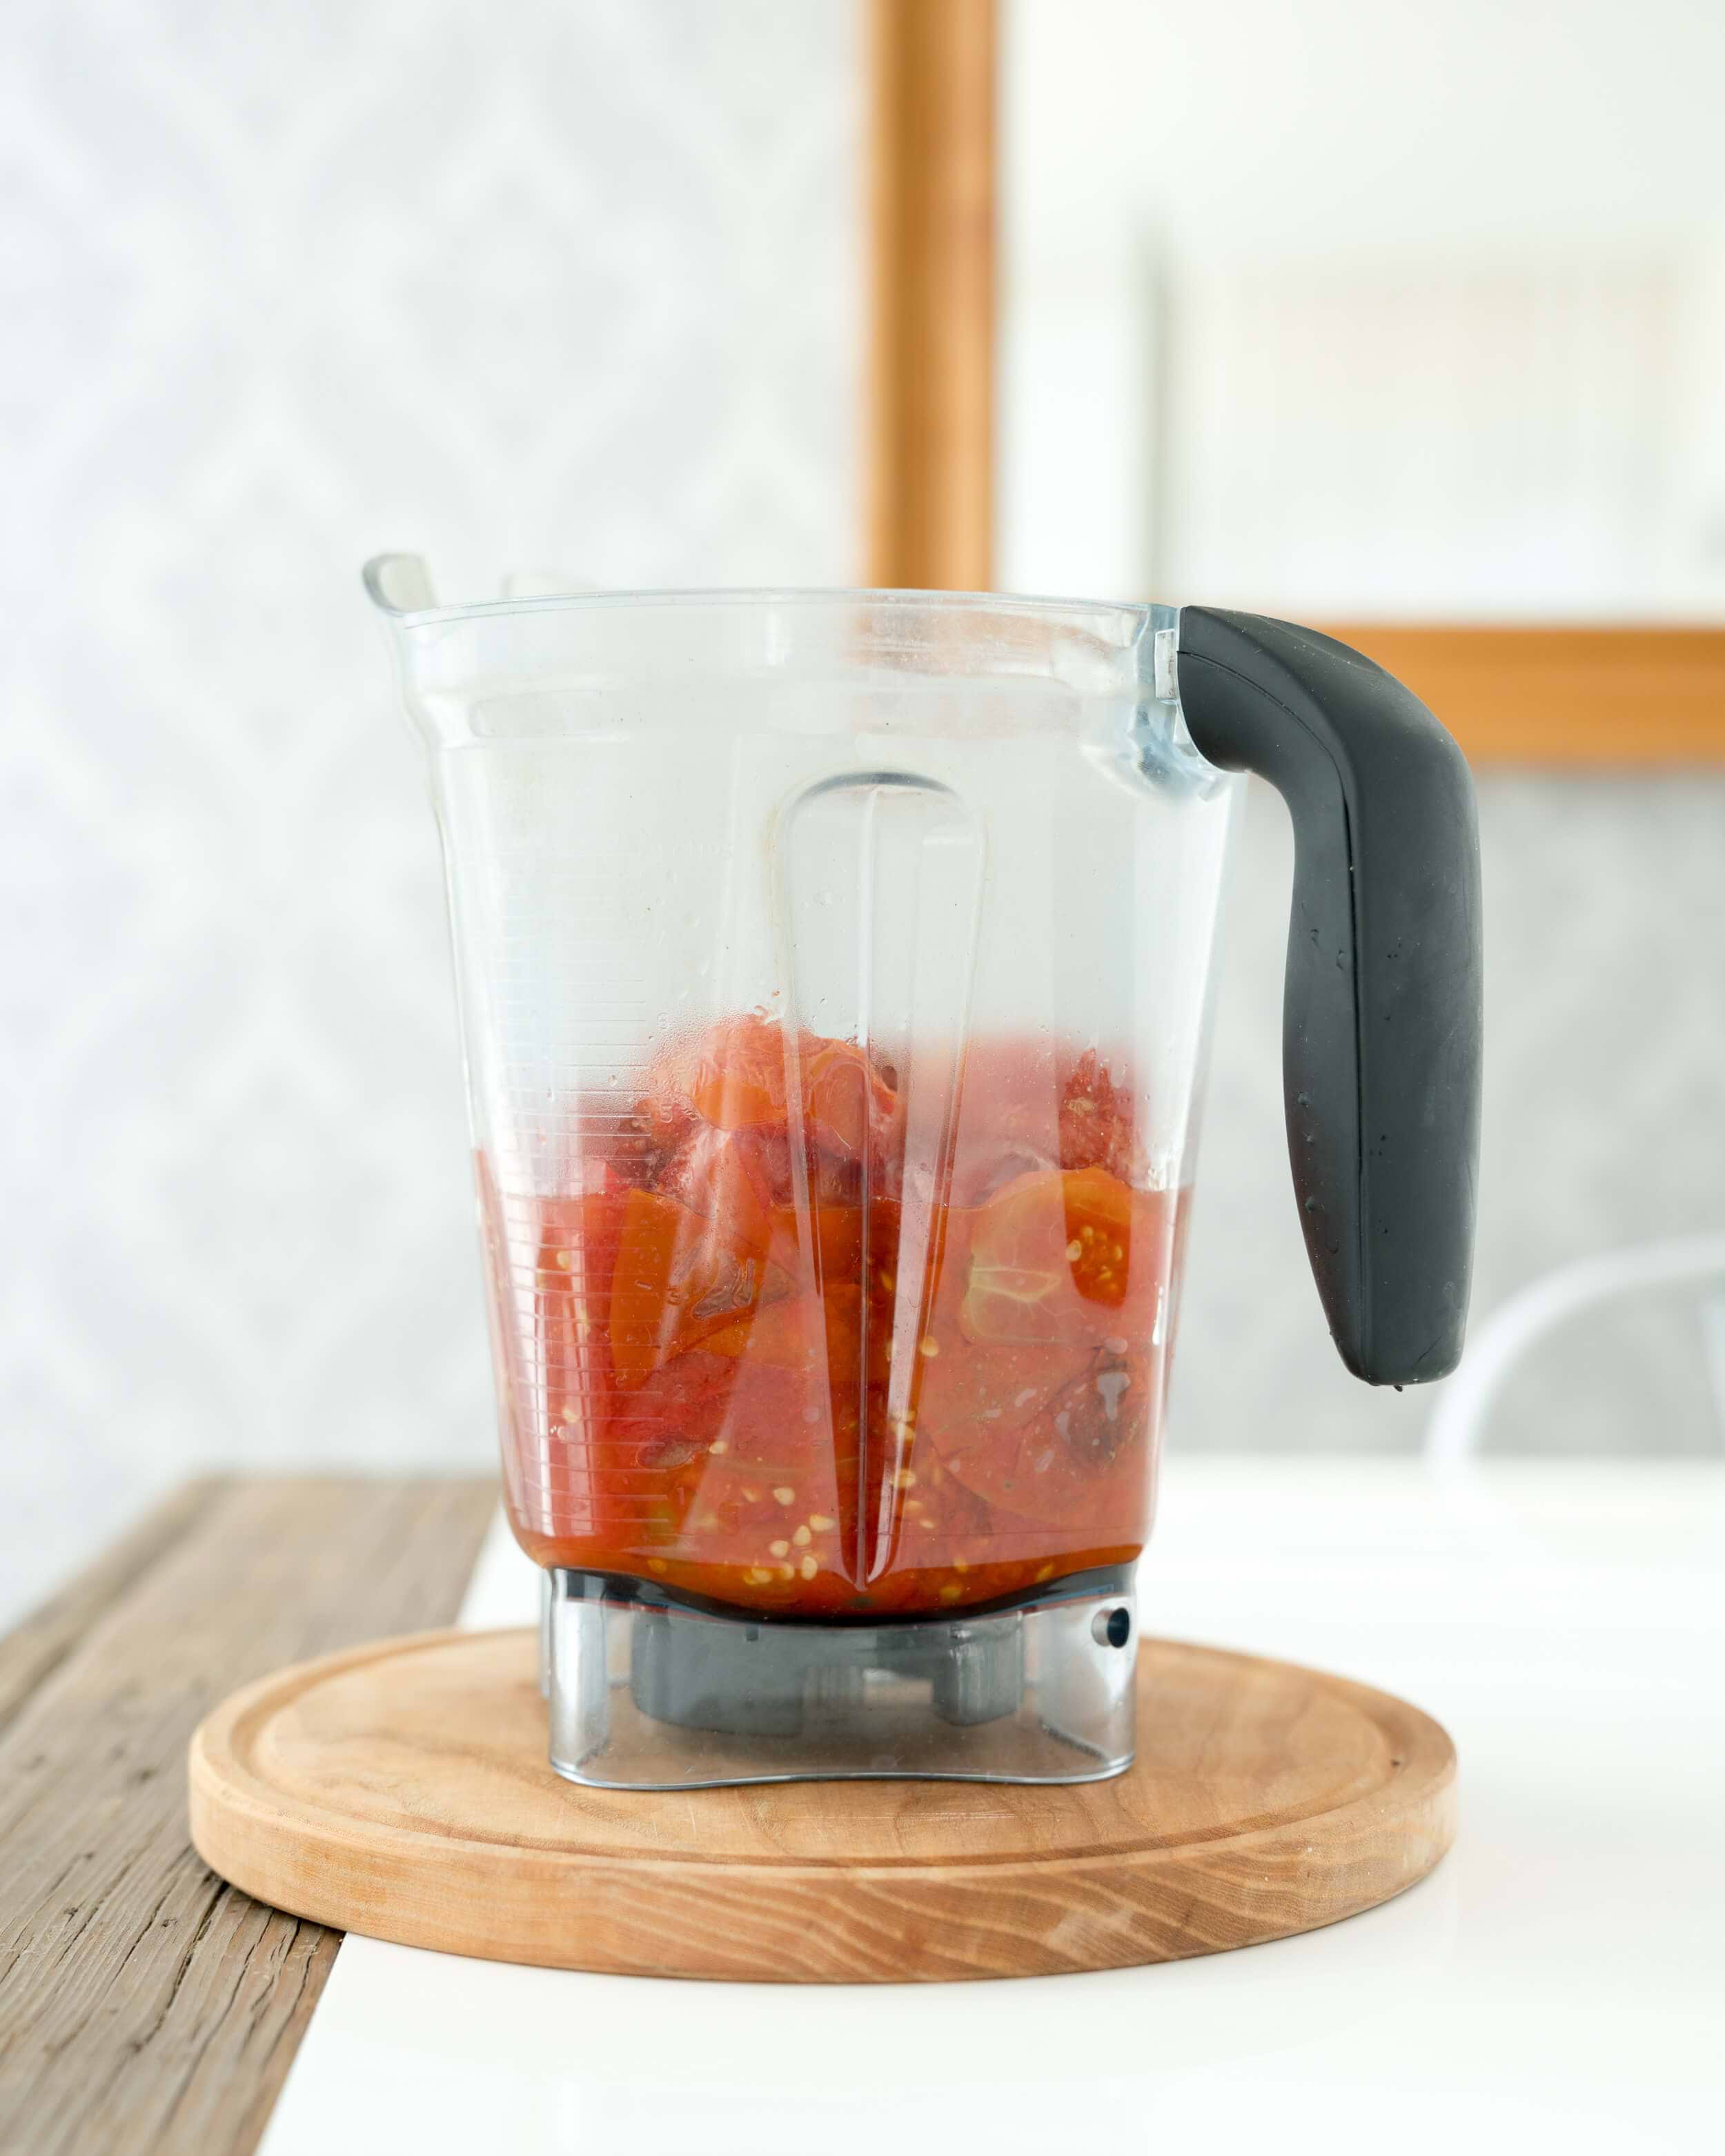 Blender Tomato Sauce